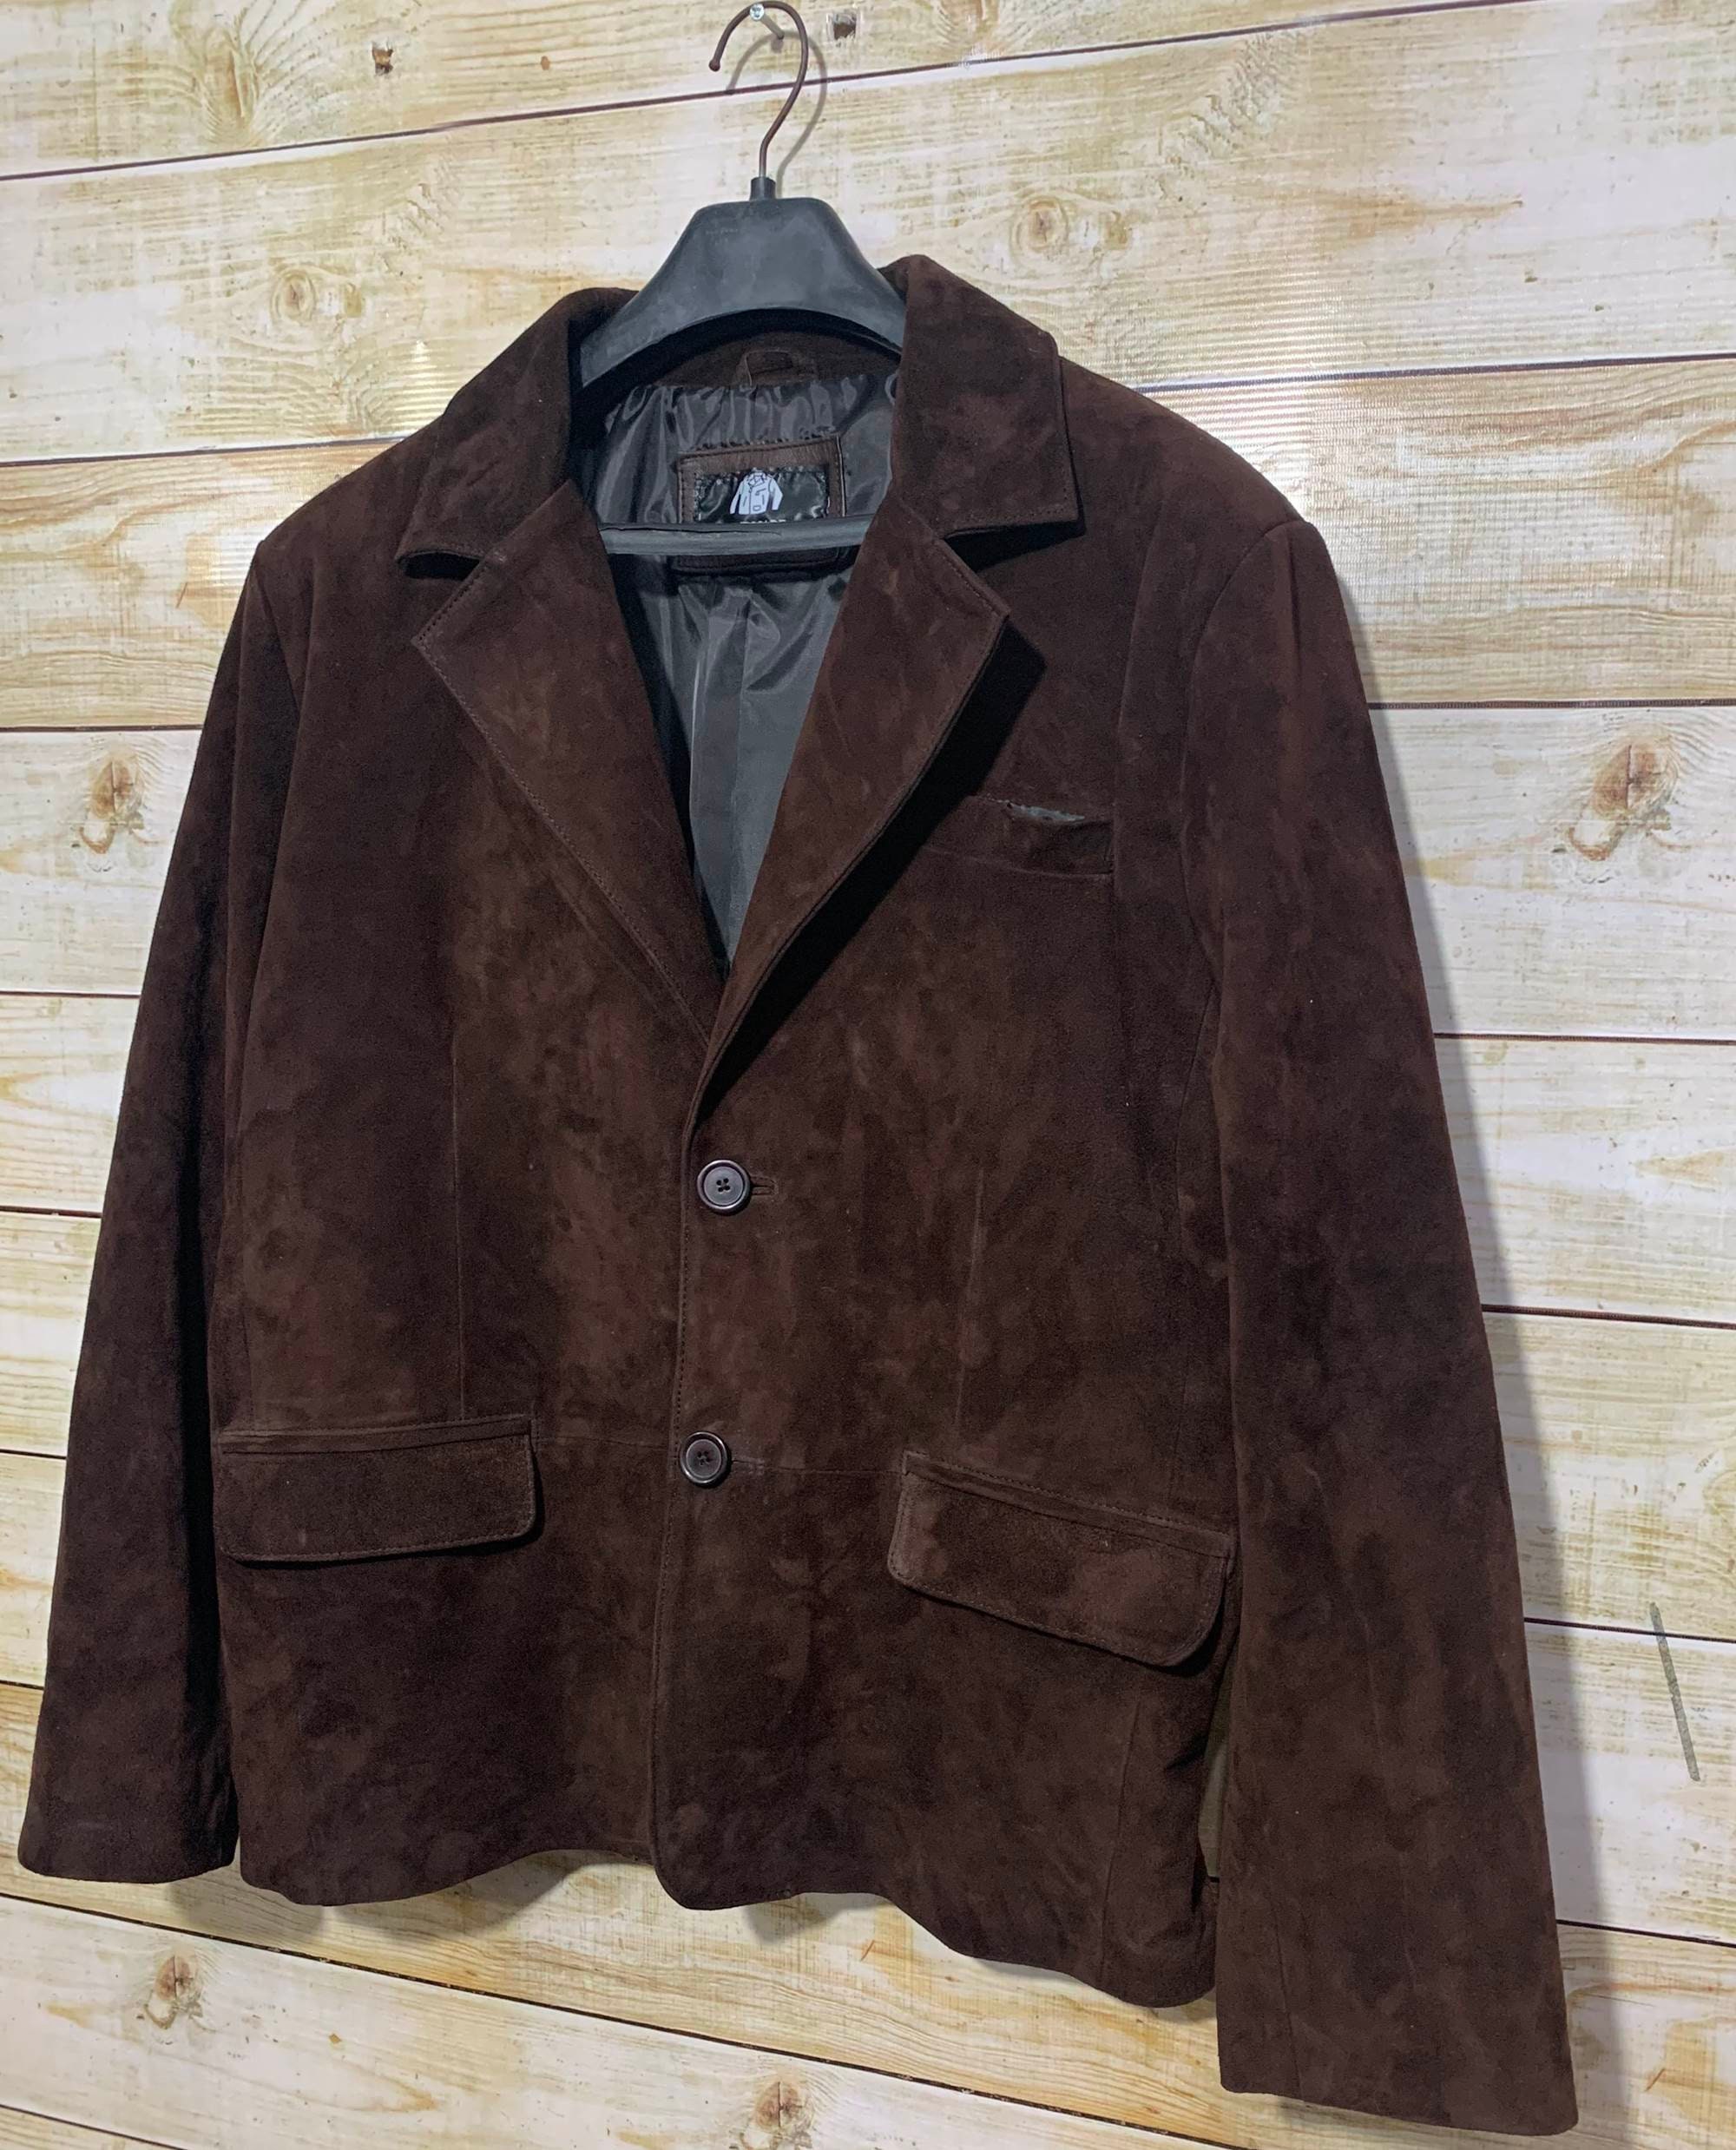 Brown Suede Leather Blazer Coat for Mens Vintage Suede Blazer - Etsy UK